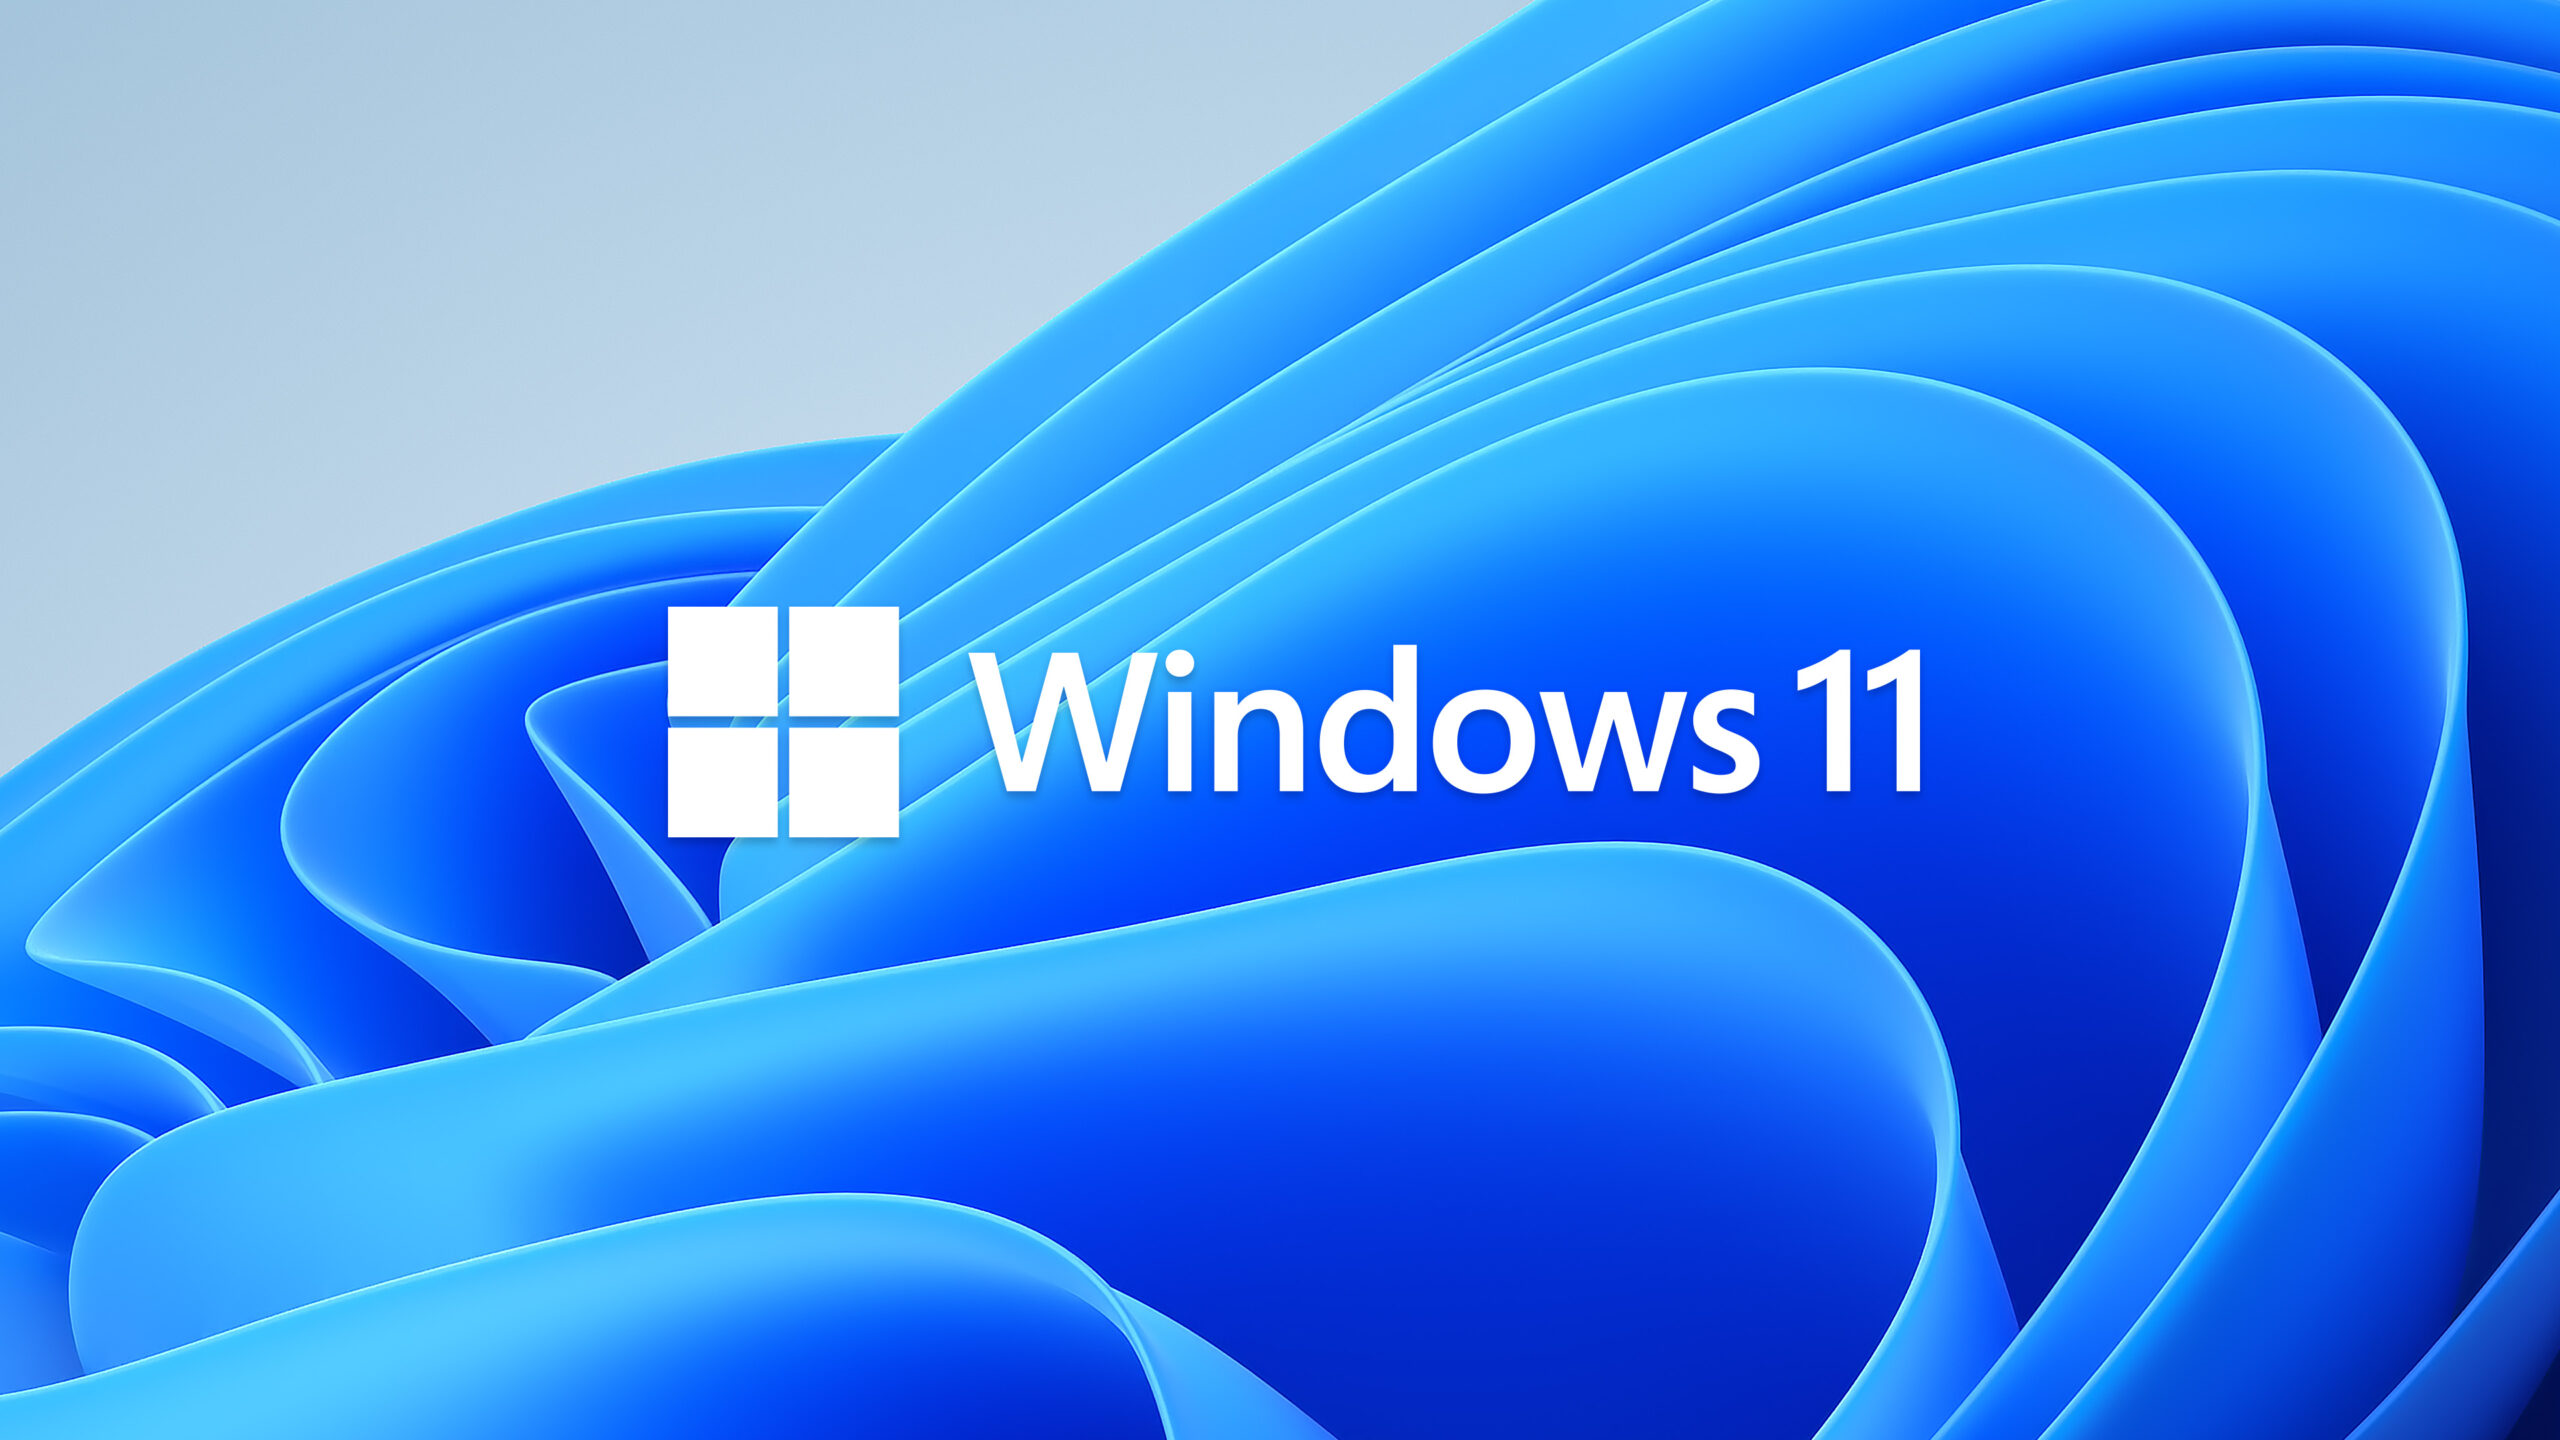 Tìm kiếm cách để cập nhật trang bị máy tính của bạn với phiên bản mới nhất của Windows - Windows 11? Đừng chần chờ, truy cập trang web của chúng tôi, và bắt đầu tải xuống ngay bây giờ.